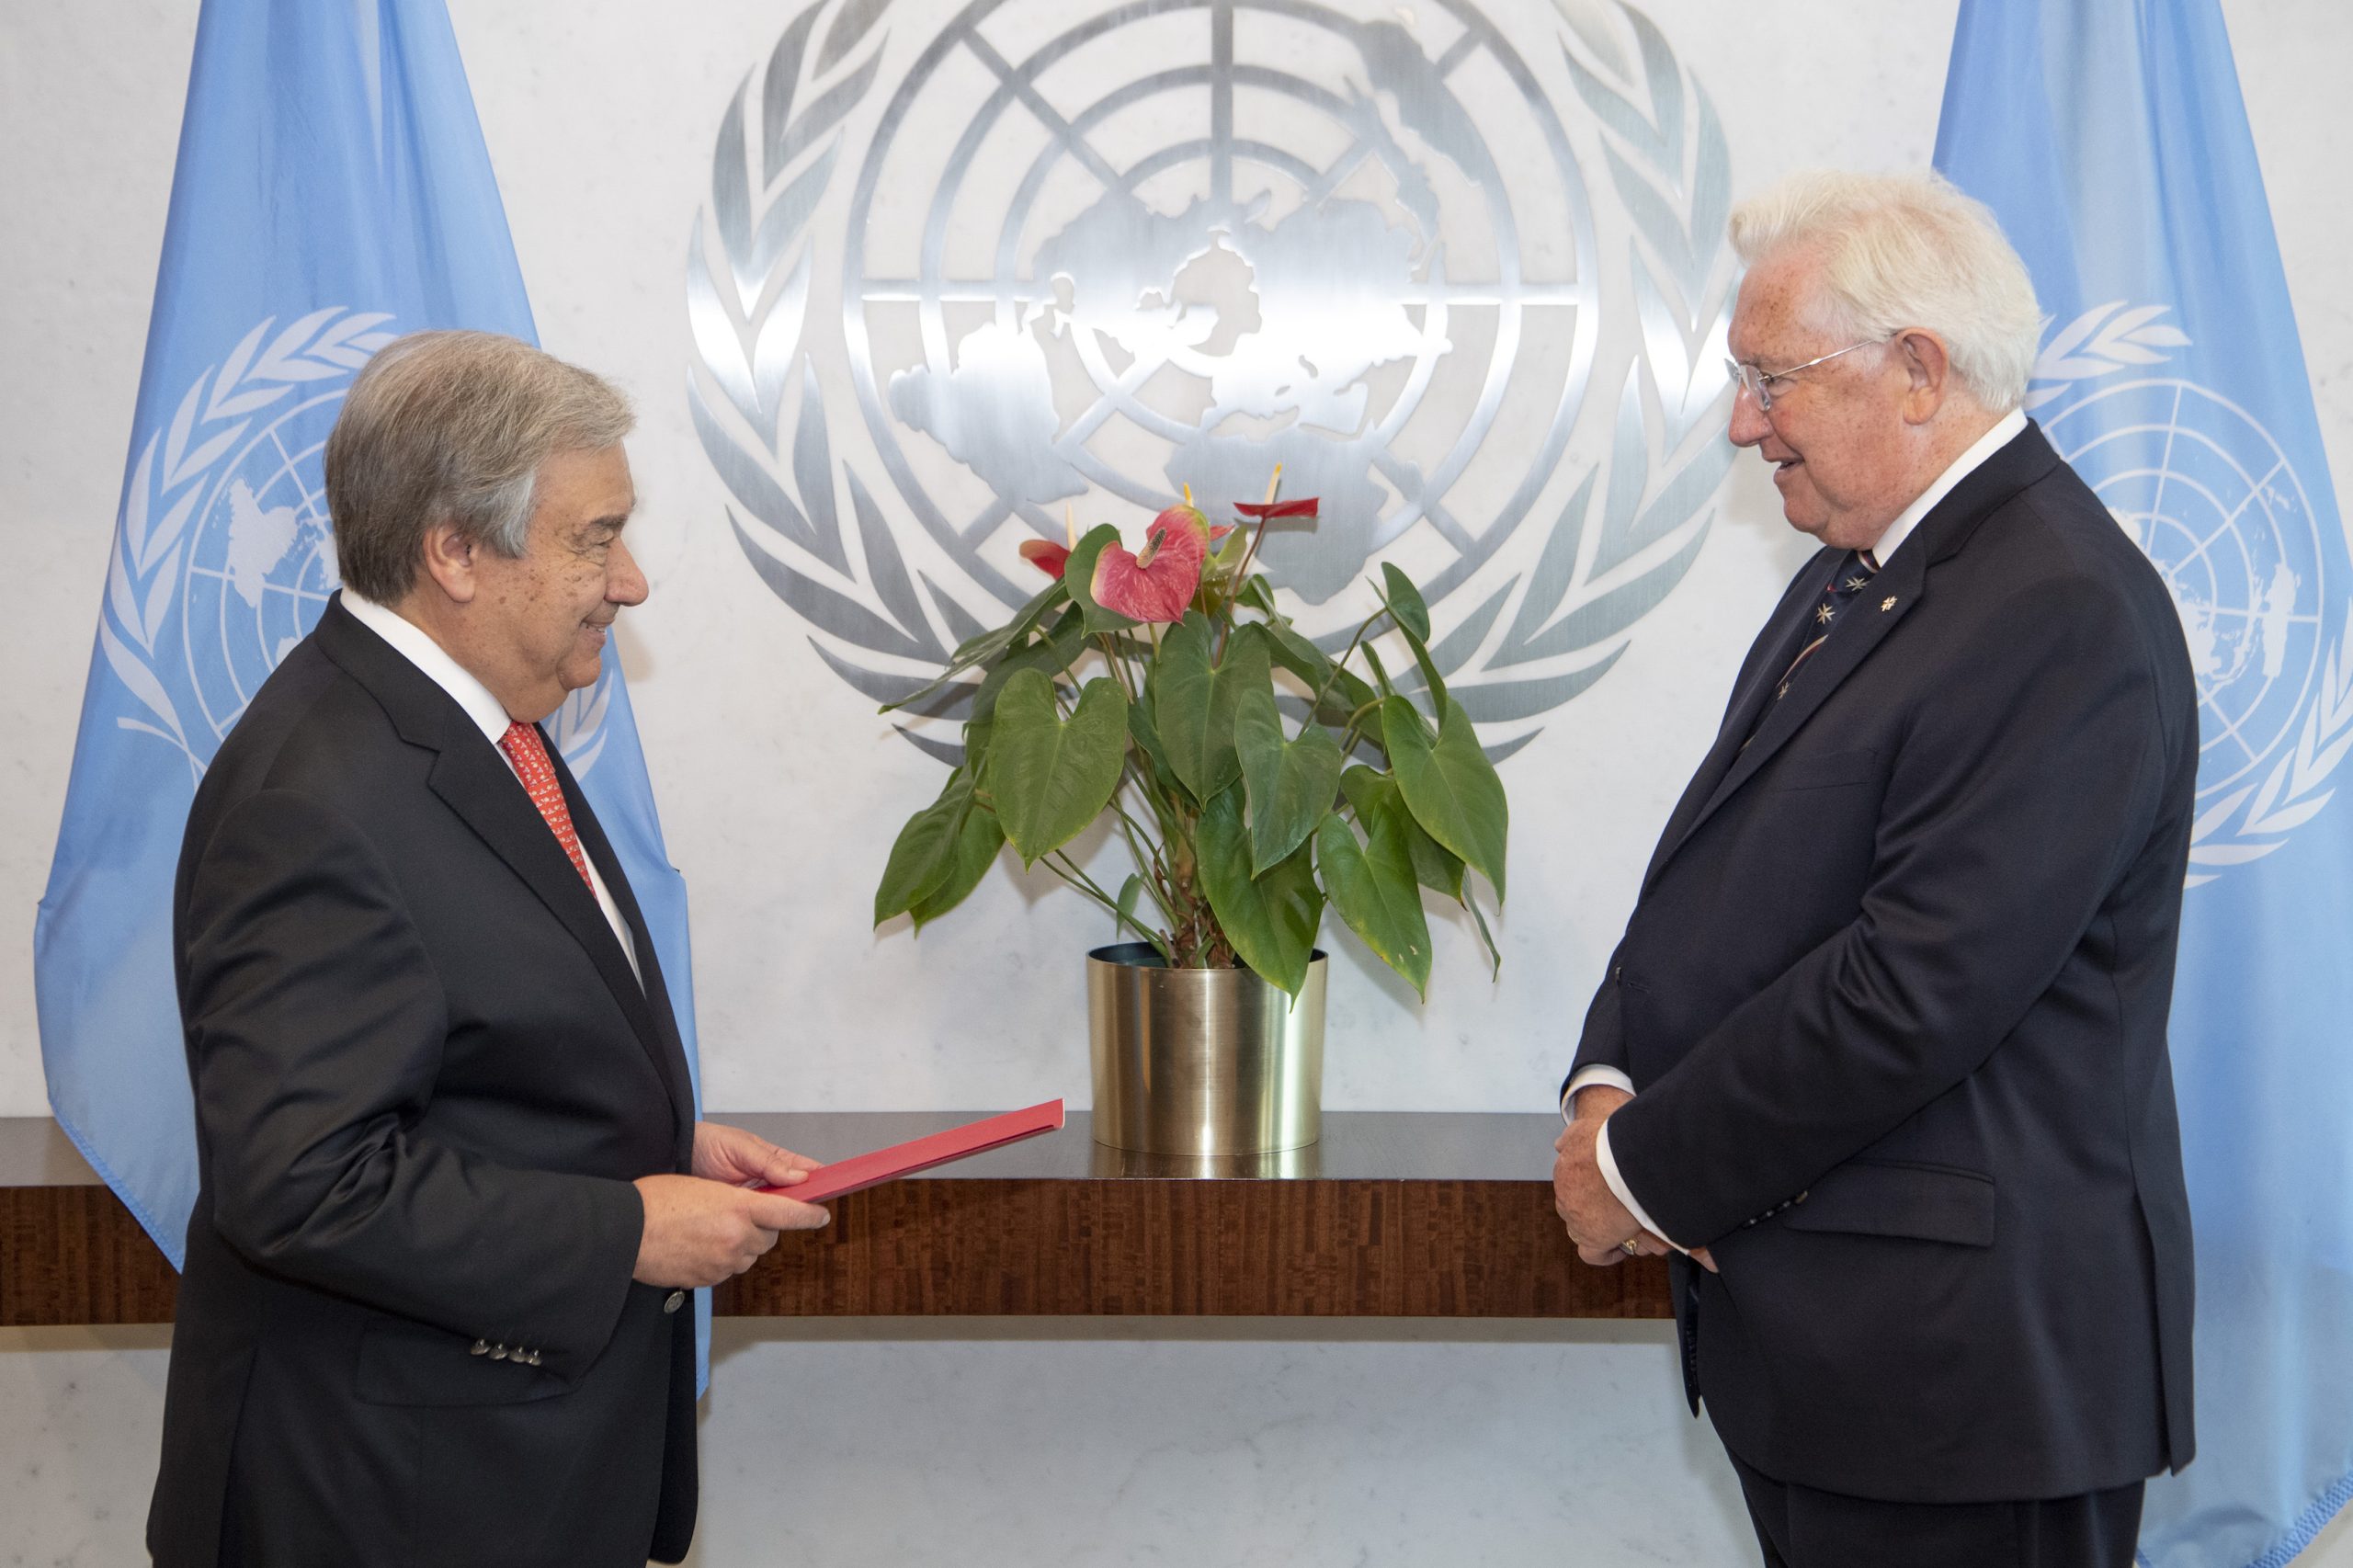 Presentazione delle credenziali dell’Amb. Paul Beresford-Hill al Segretario Generale delle Nazioni Unite